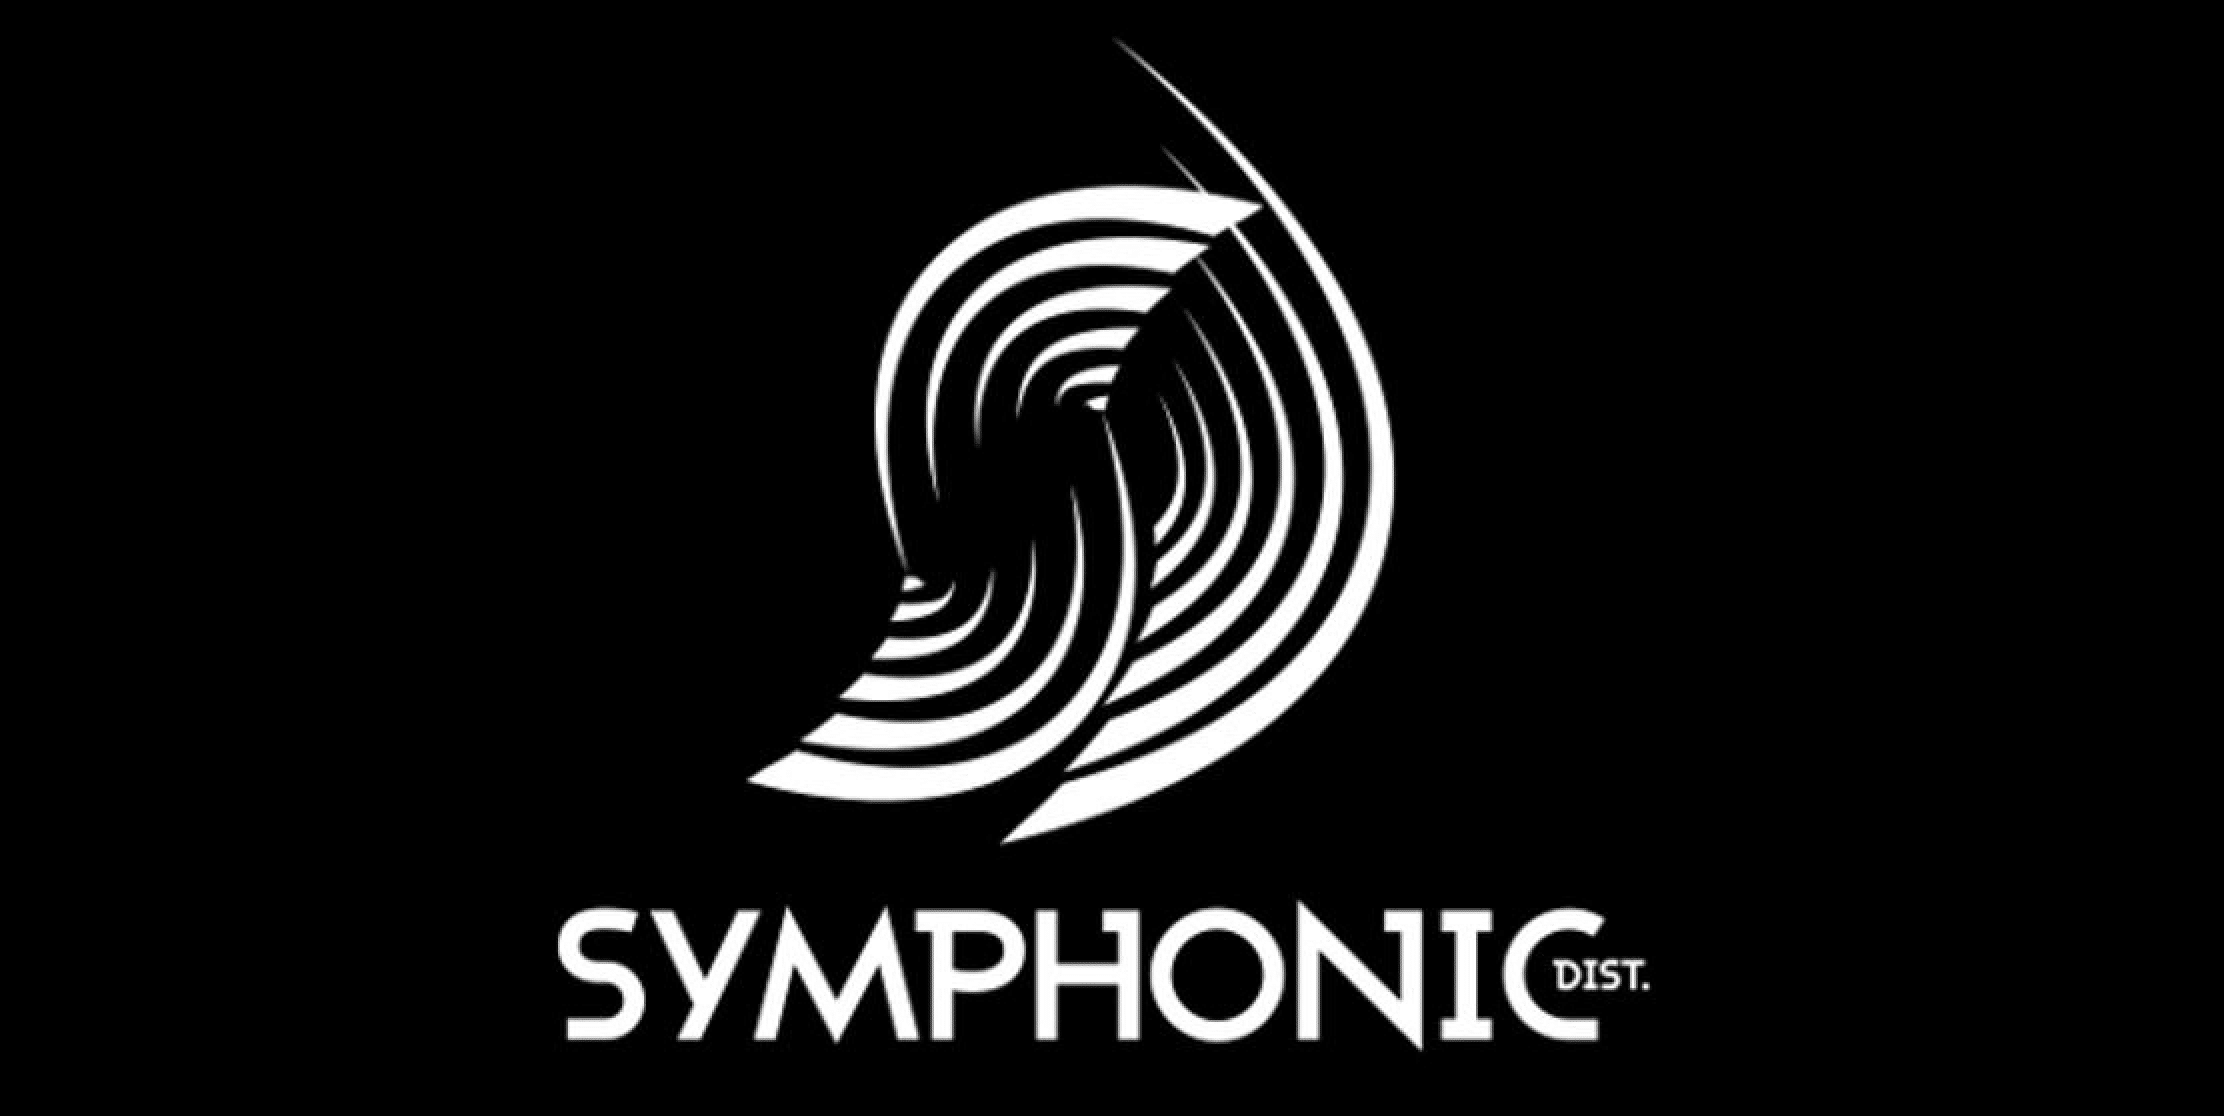 Symphonic - Unison